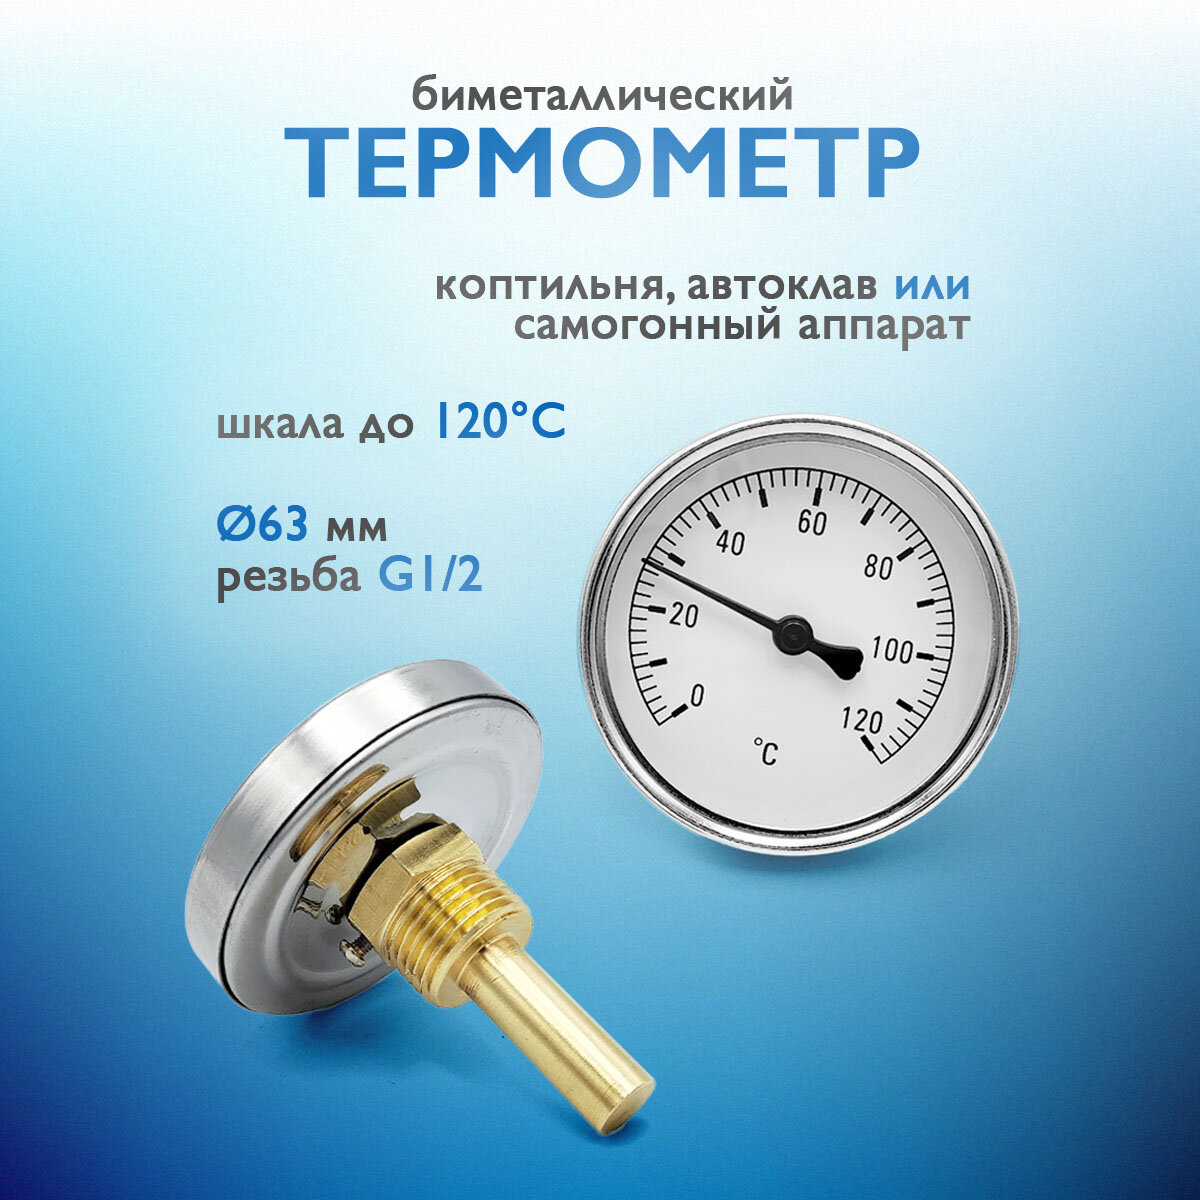 Термометр для коптильни, самогонного аппарата, автоклава (63мм)